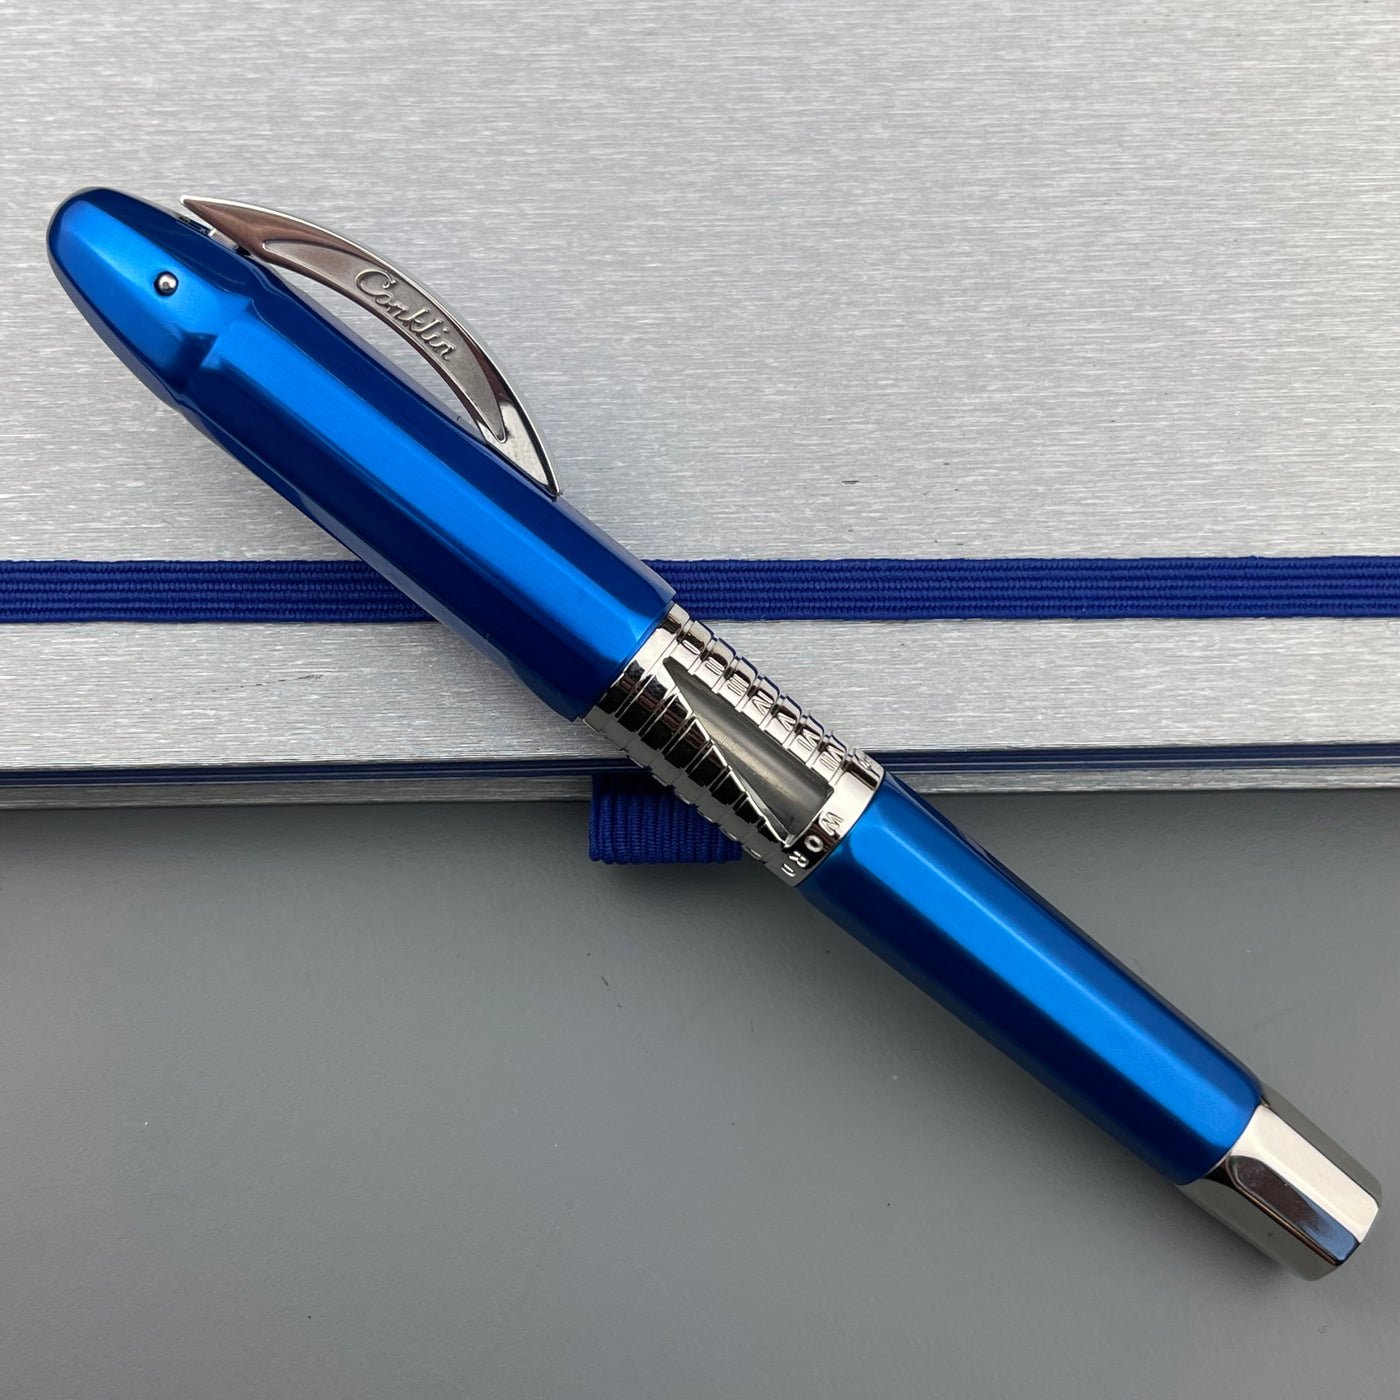 Conklin Nozac Classic 125 Anniversary Rollerball Pen - Blue / Chrome (Limited Edition)